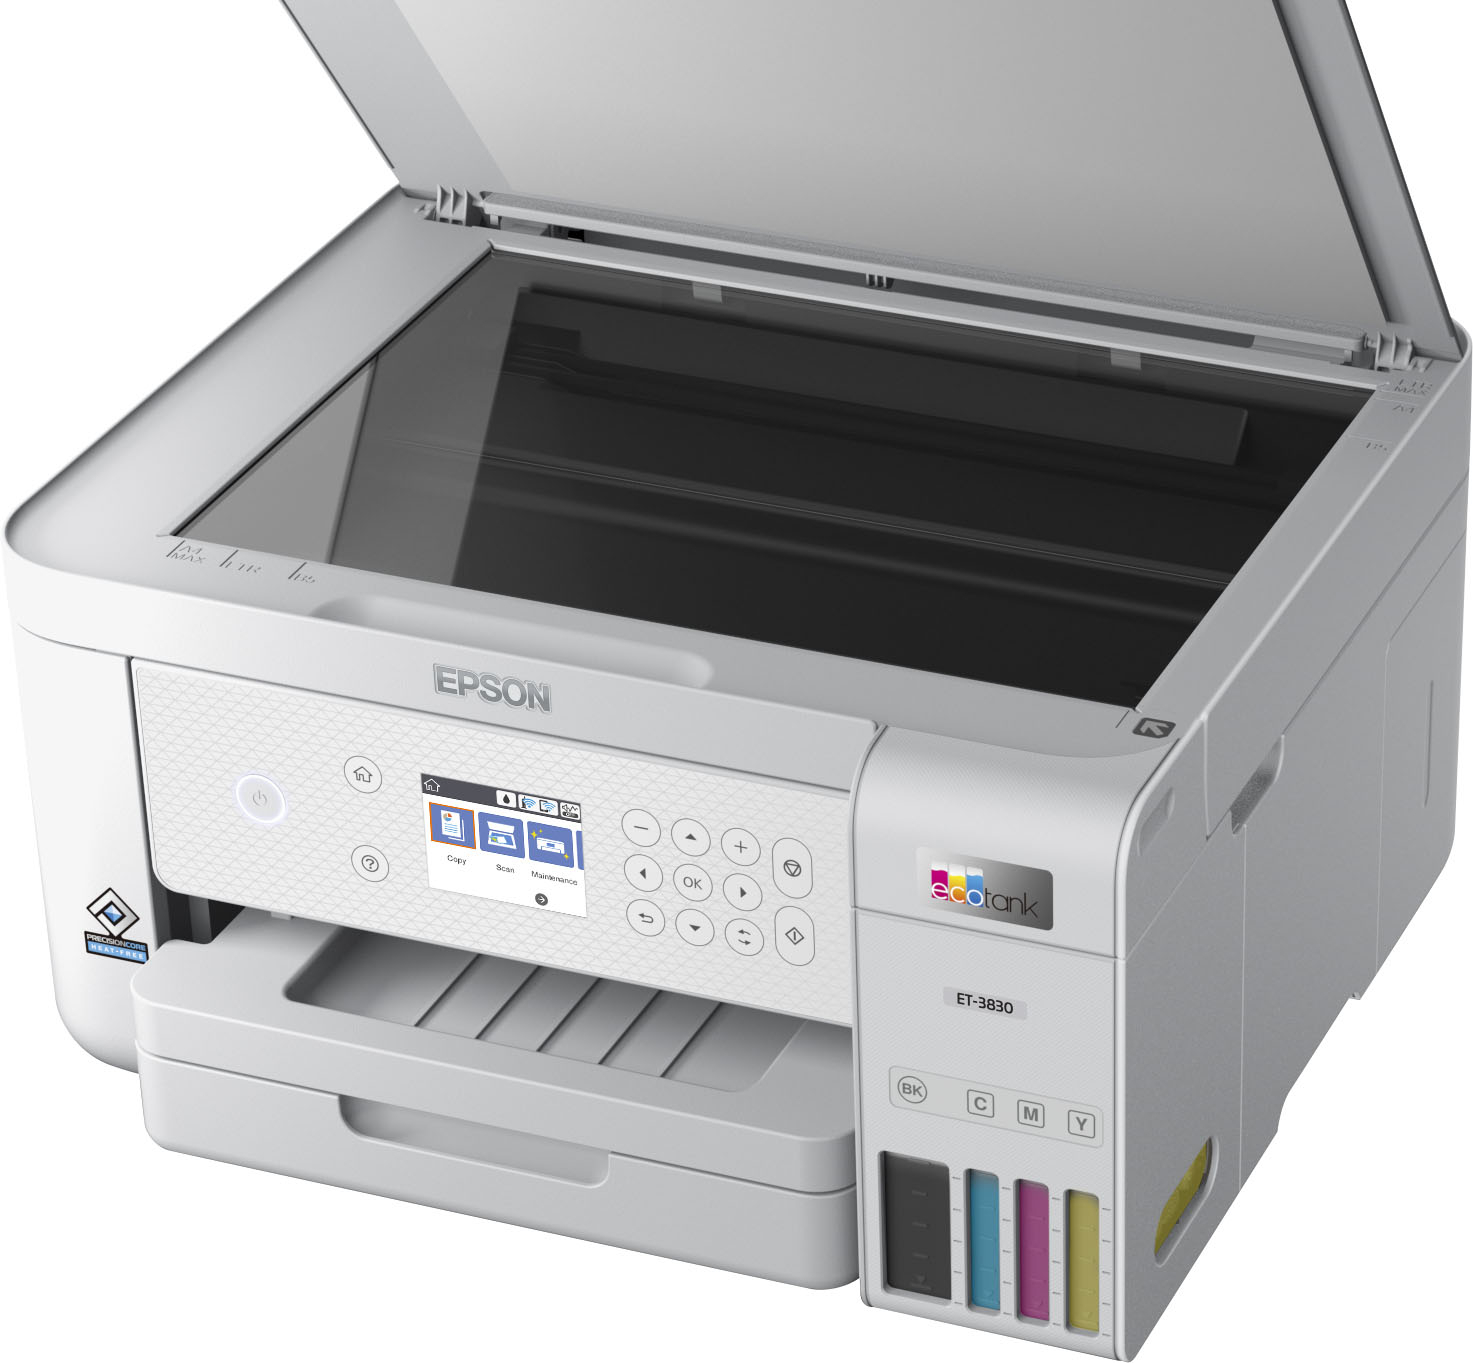 Epson EcoTank ET-2710 printer review